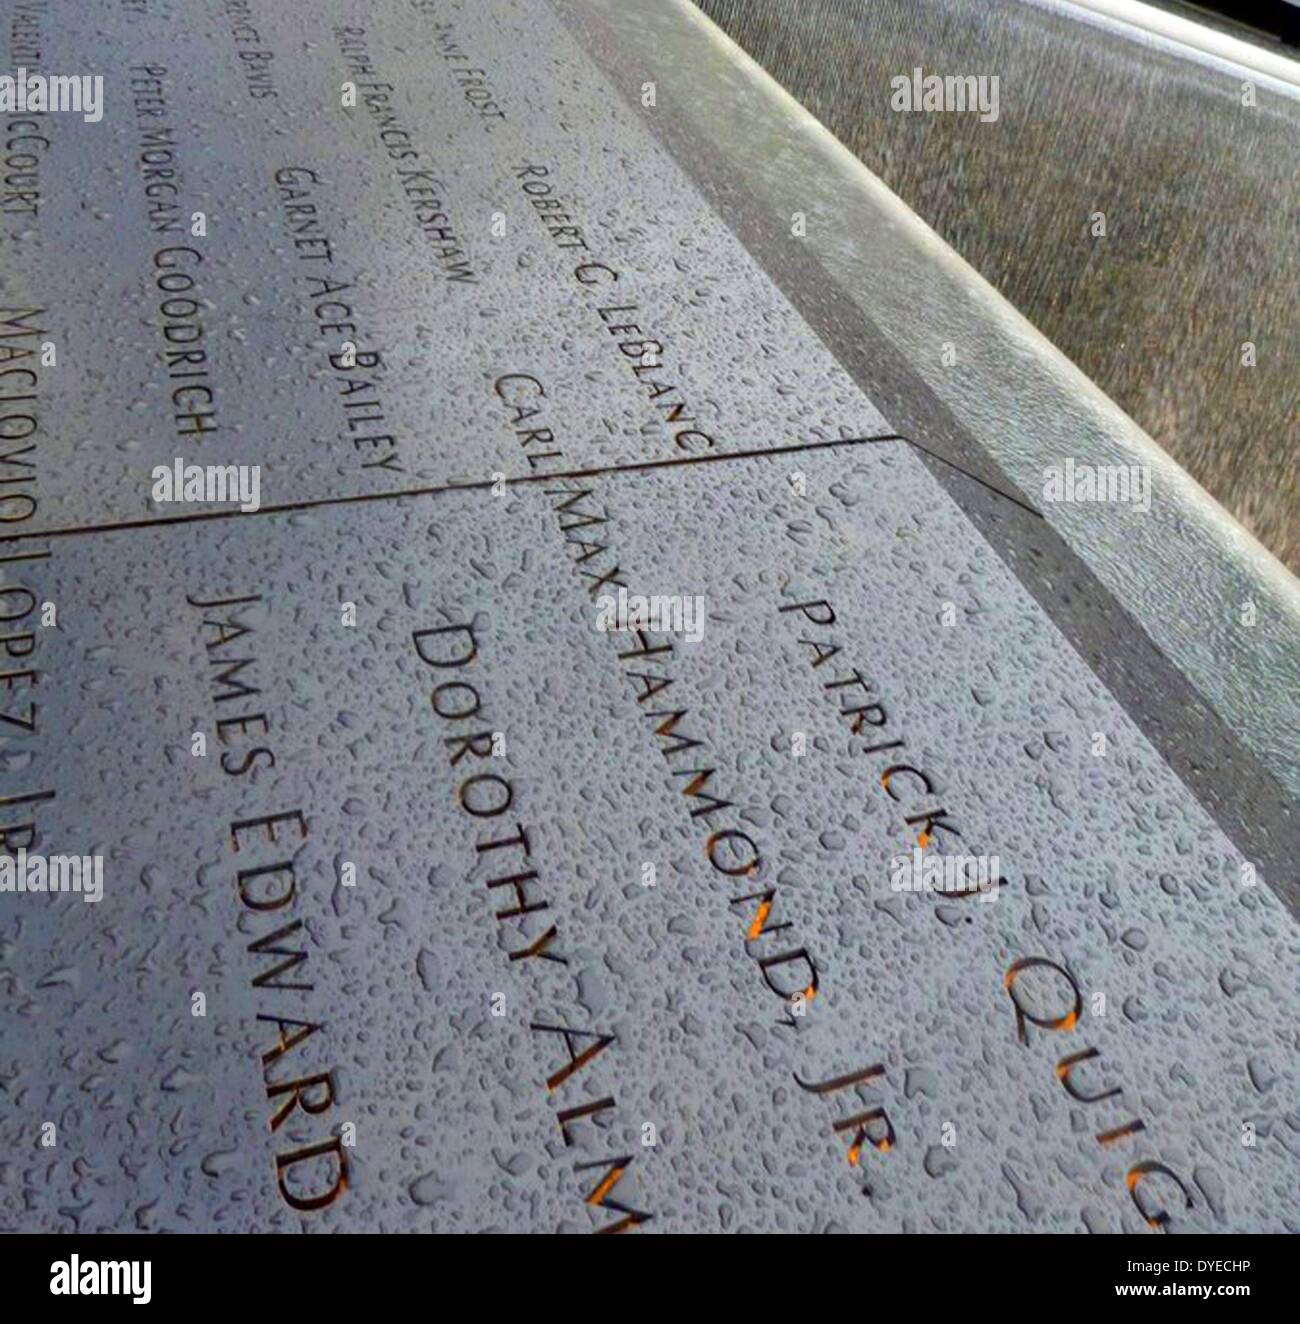 Ground Zero Memorial (riflettente assenza), per onorare le vittime dell'11 settembre 2001 attentato al World Trade Centr ewhich destroed le Torri Gemelle. La città di New York , USA Foto Stock